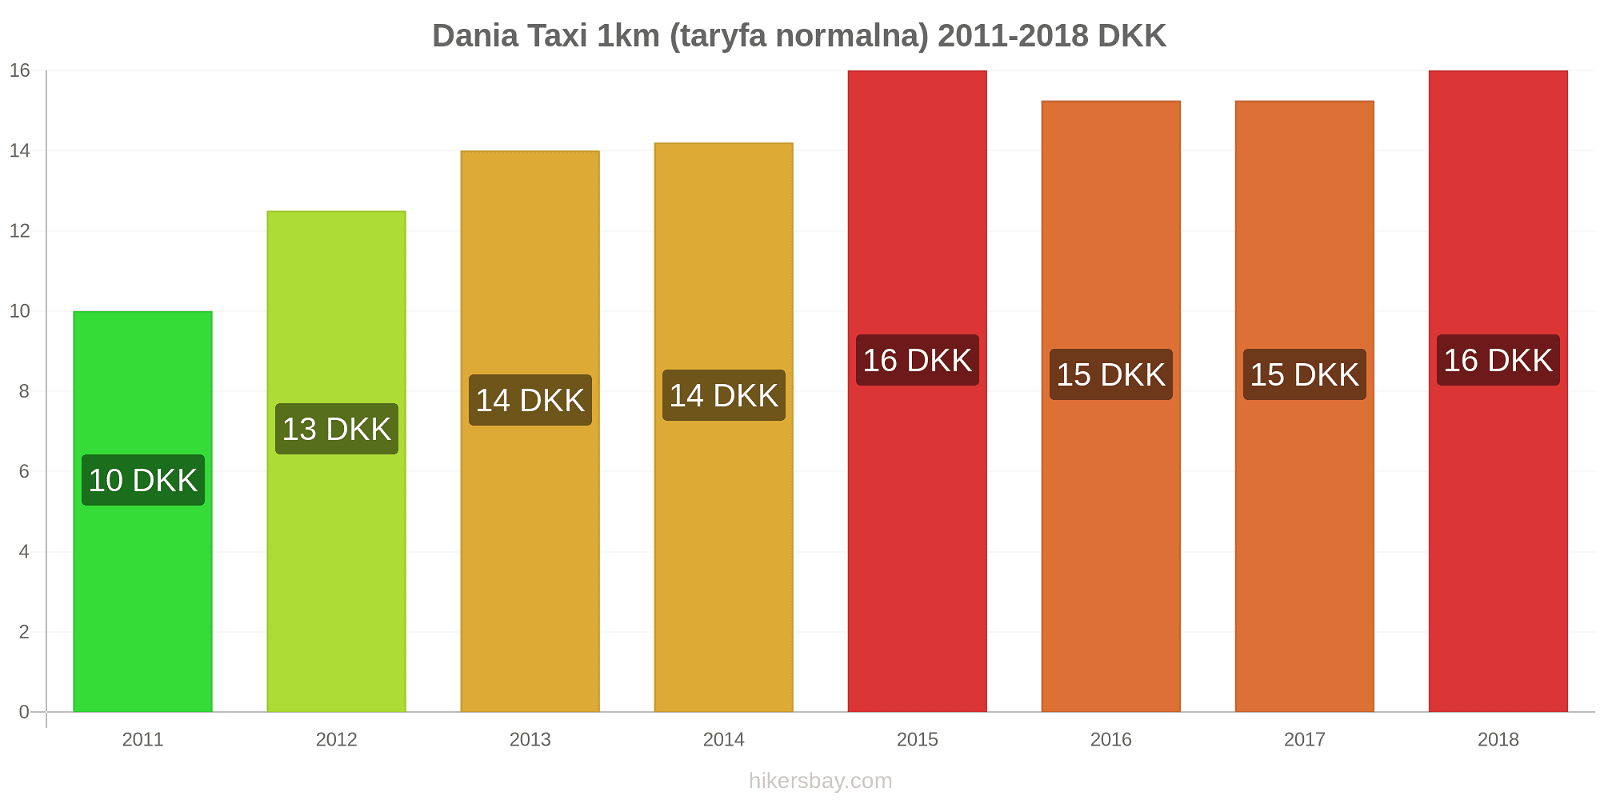 Dania zmiany cen Taxi 1km (taryfa normalna) hikersbay.com